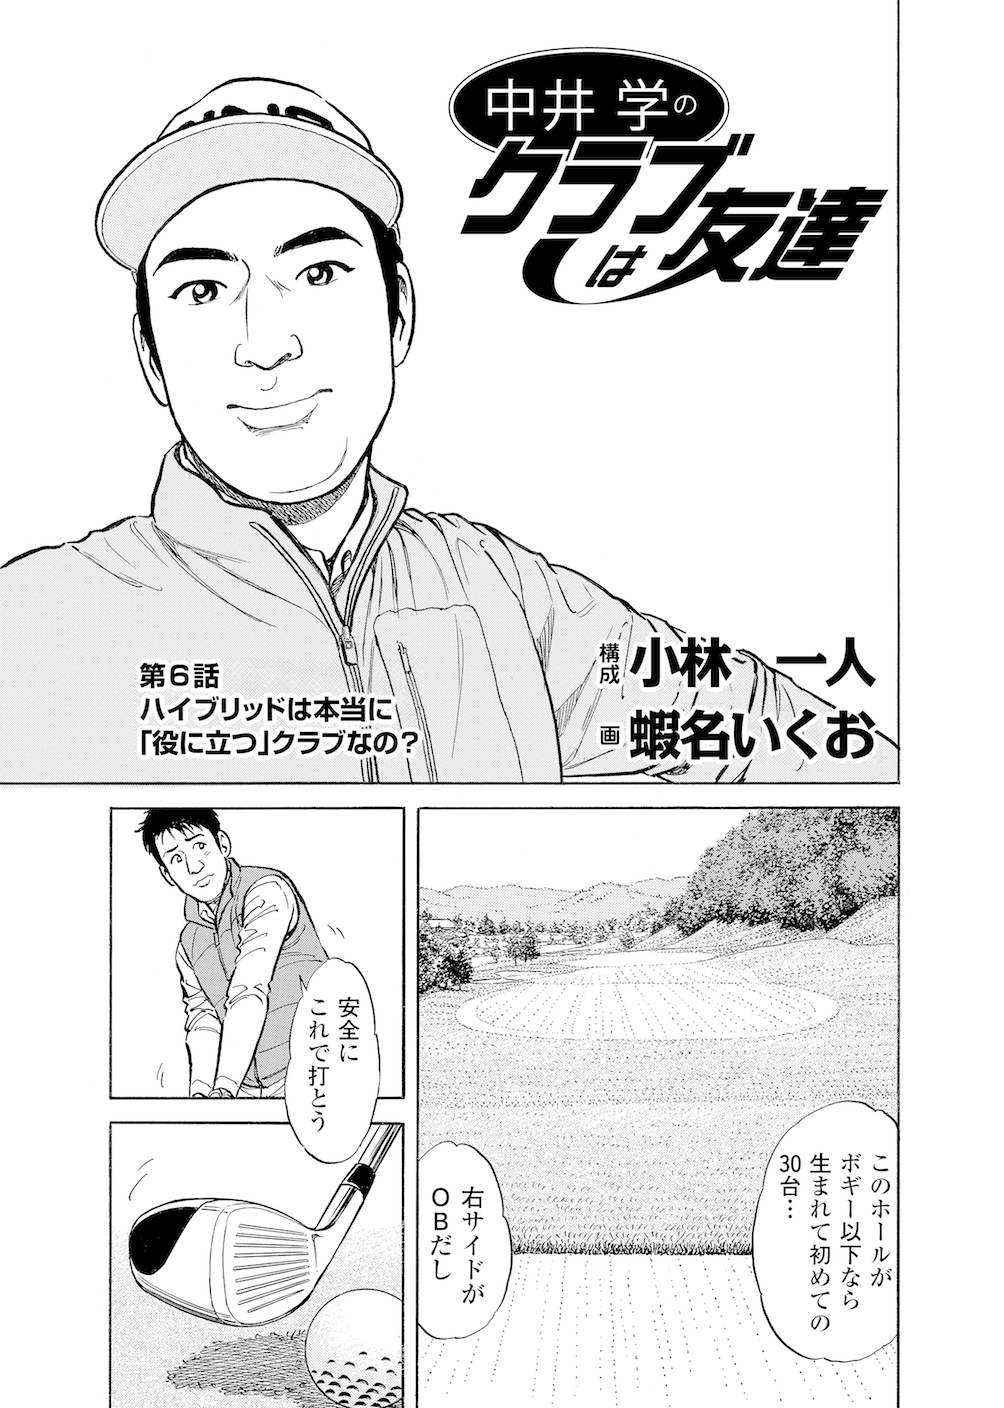 第6話 「ハイブリッドは本当に｢役に立つ｣クラブなの?」 - 無料で読めるゴルフレッスンコミックWEB | 日本文芸社